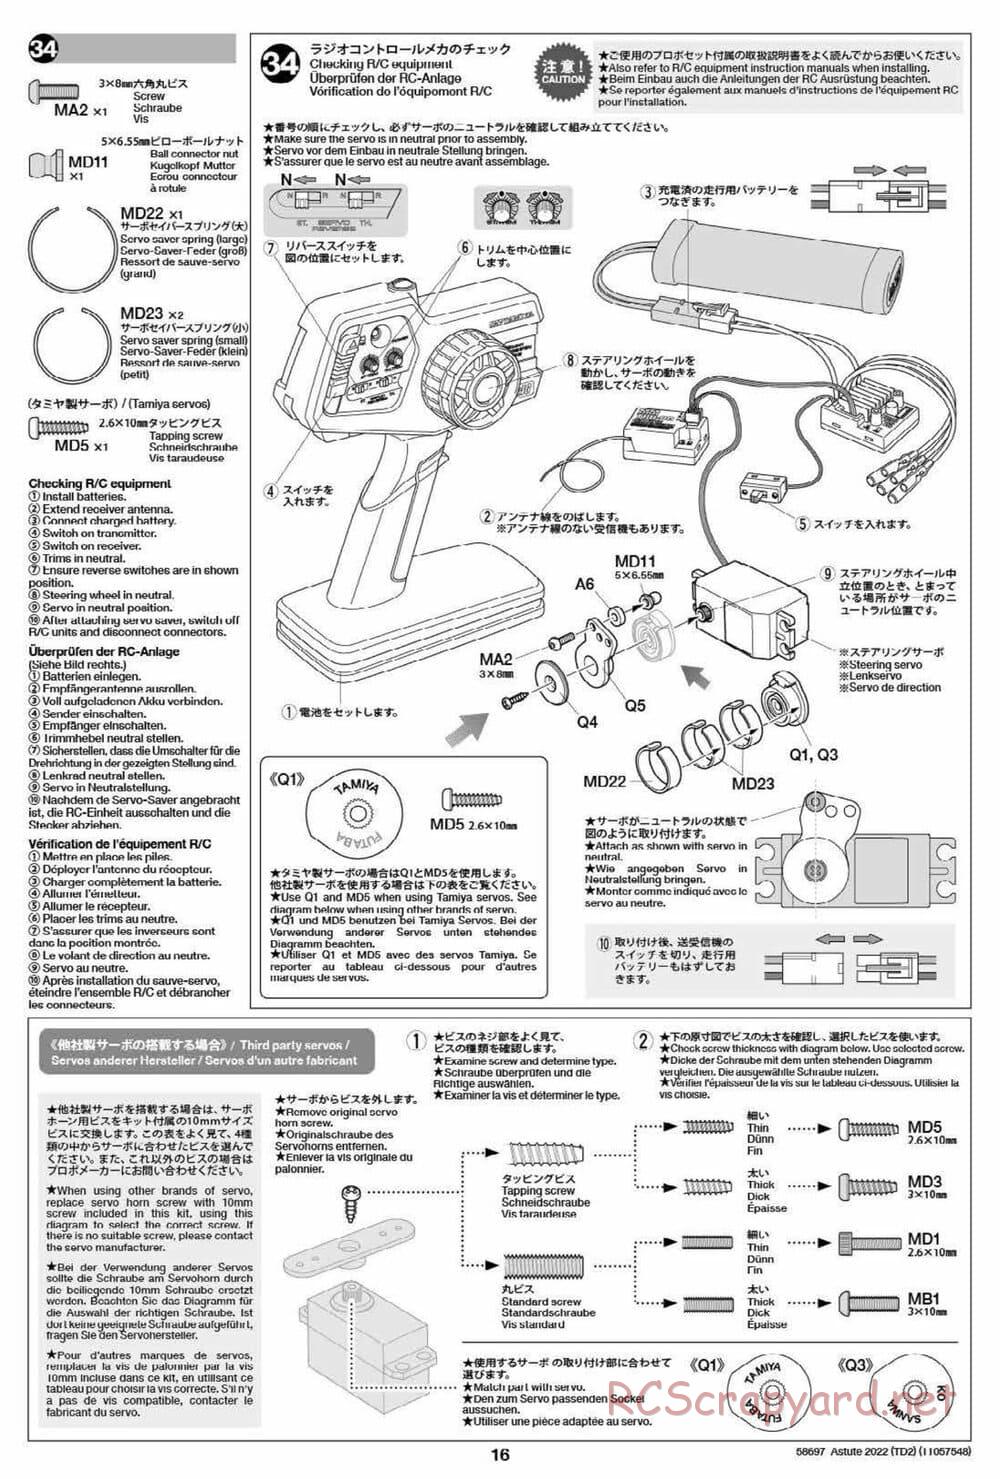 Tamiya - Astute 2022 - TD2 Chassis - Manual - Page 16